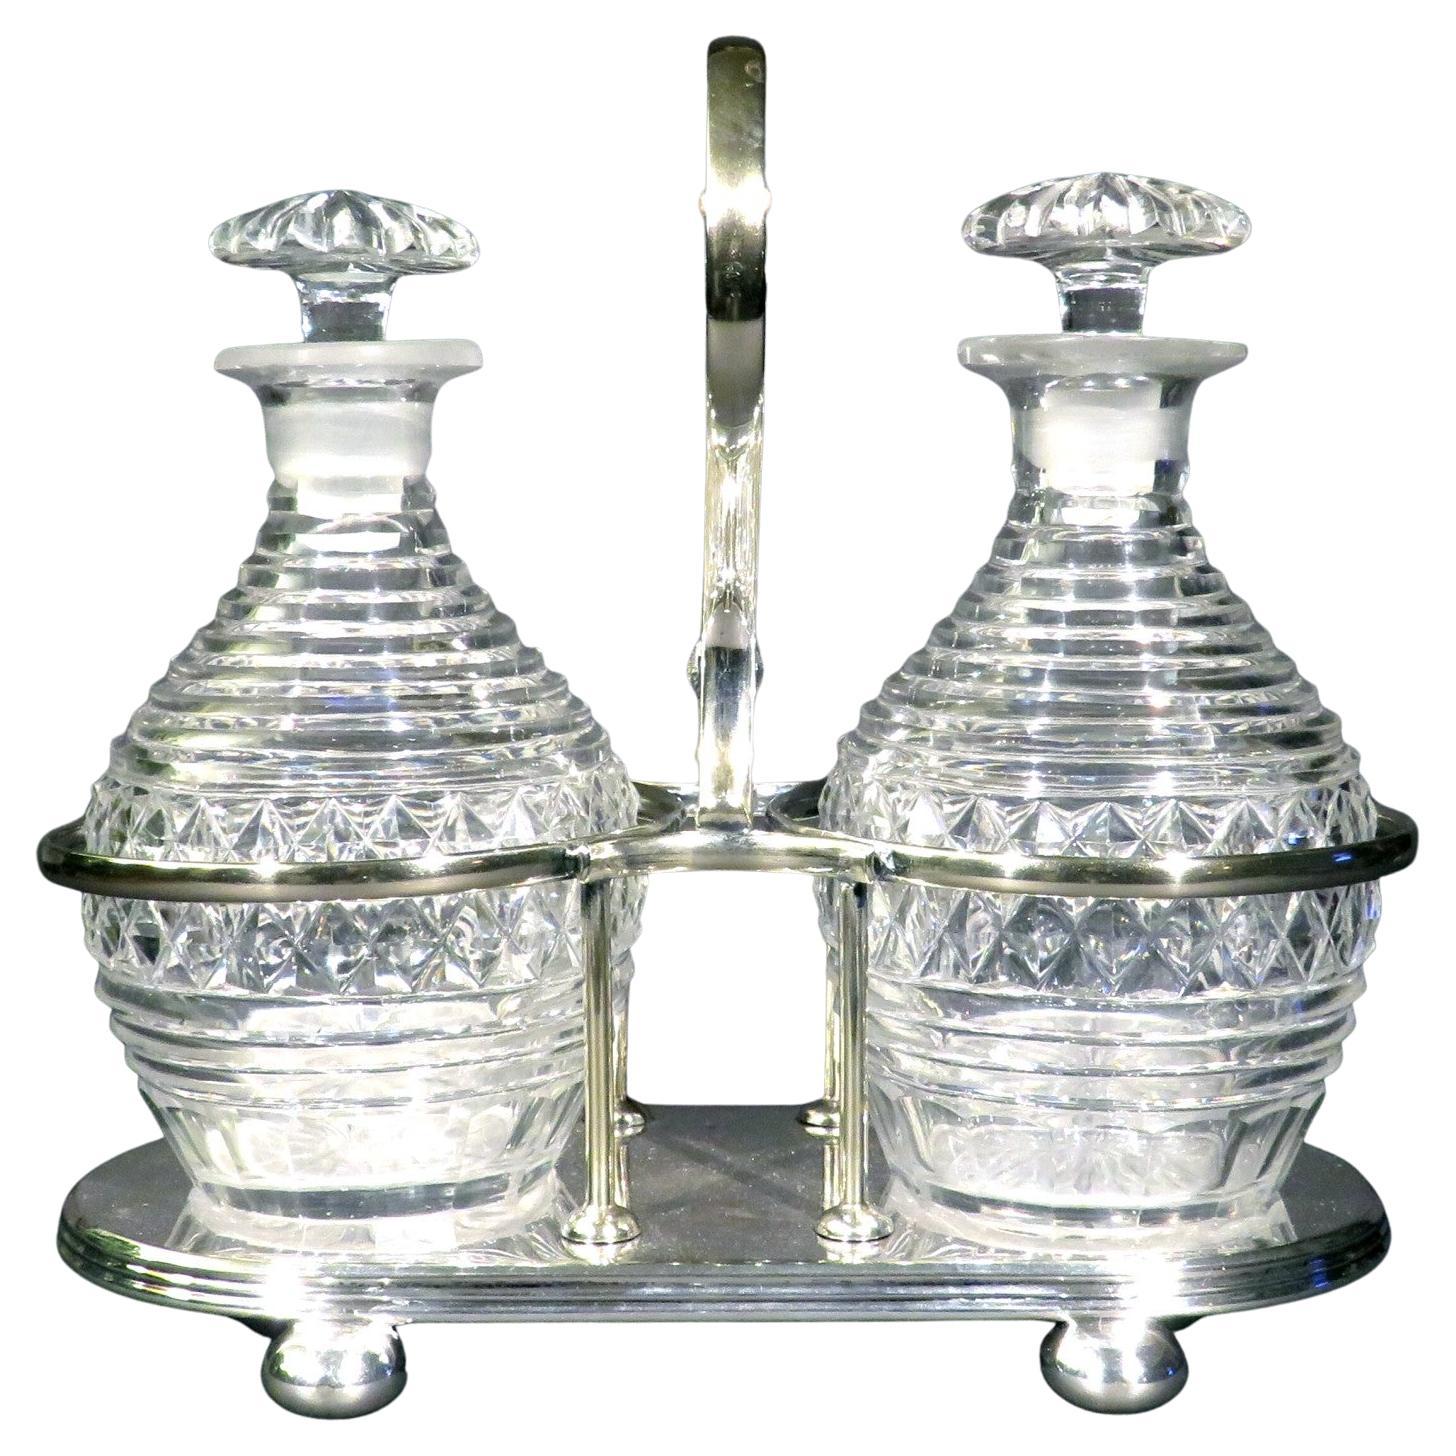 Paire de carafes à spiritueux en verre taillé anglo-irlandais de l'époque géorgienne et caddy en métal argenté